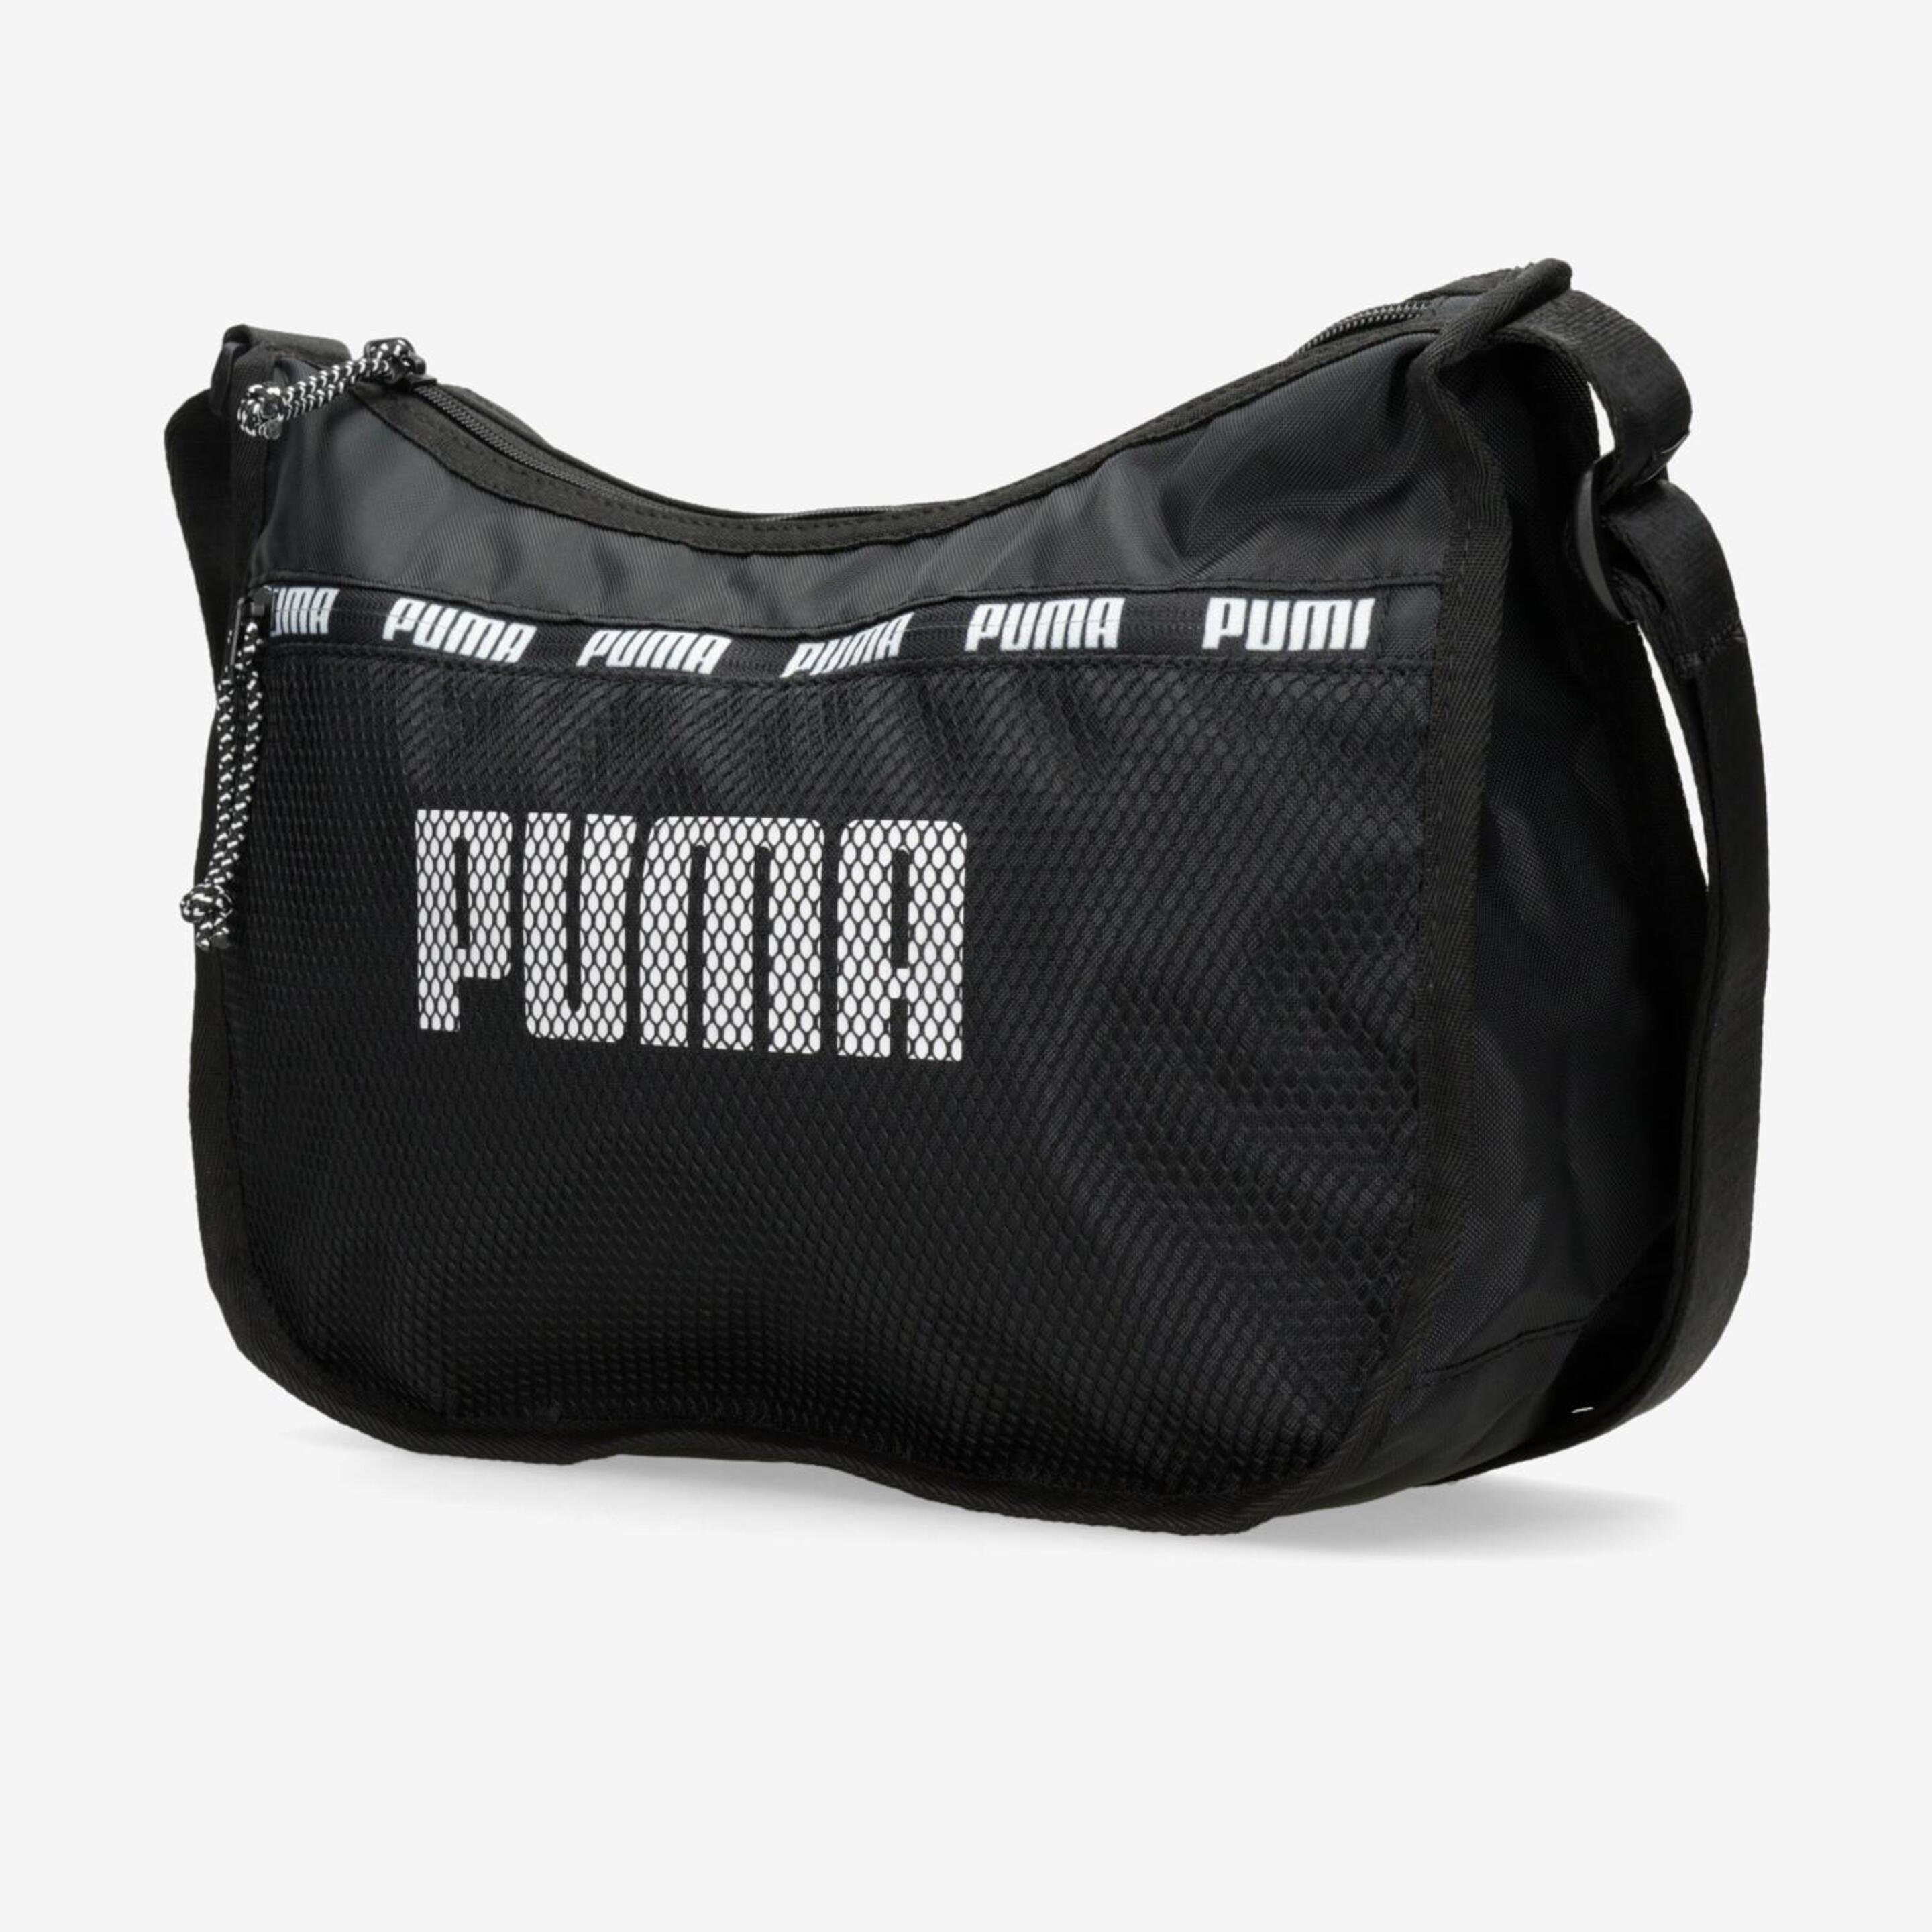 Puma Core